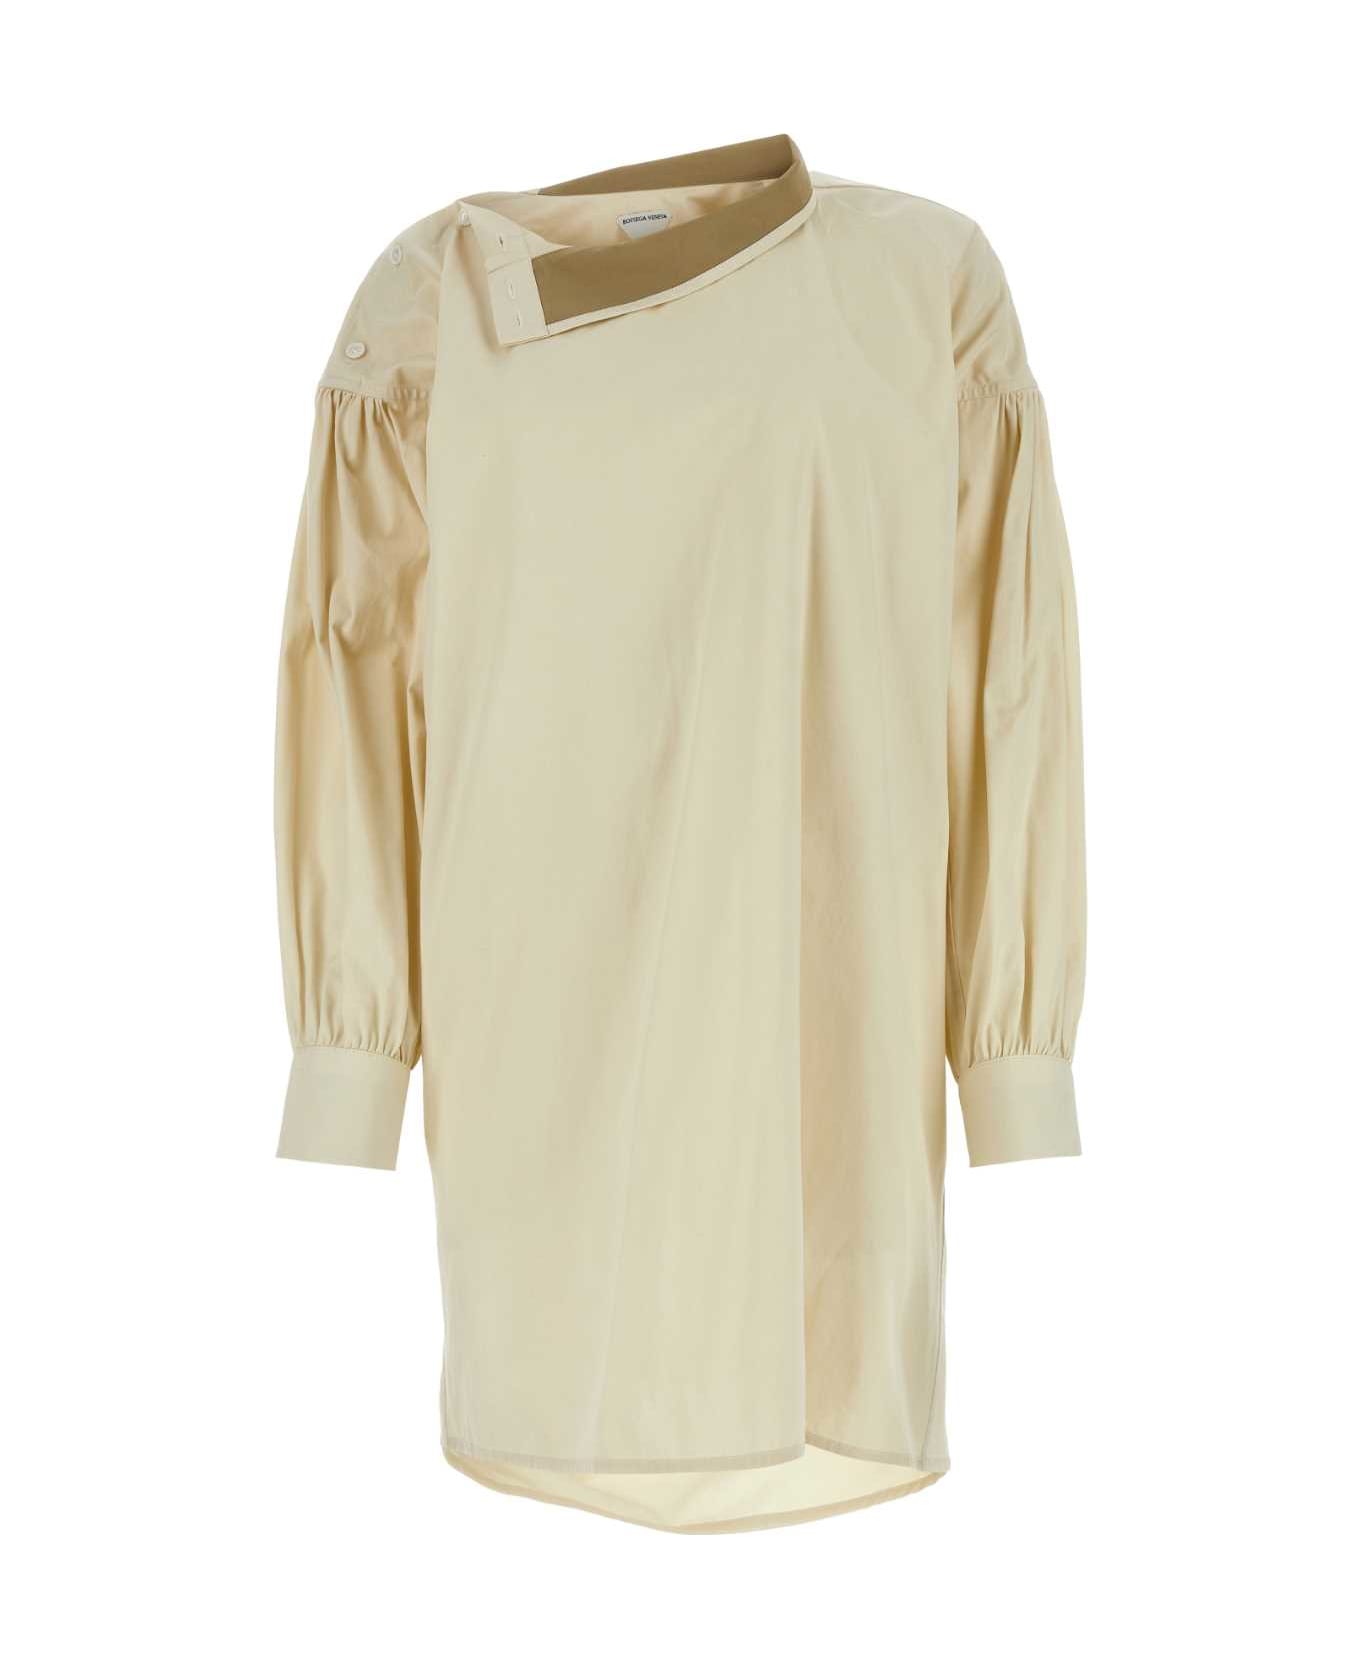 Bottega Veneta Sand Cotton Blend Shirt Dress - SAND